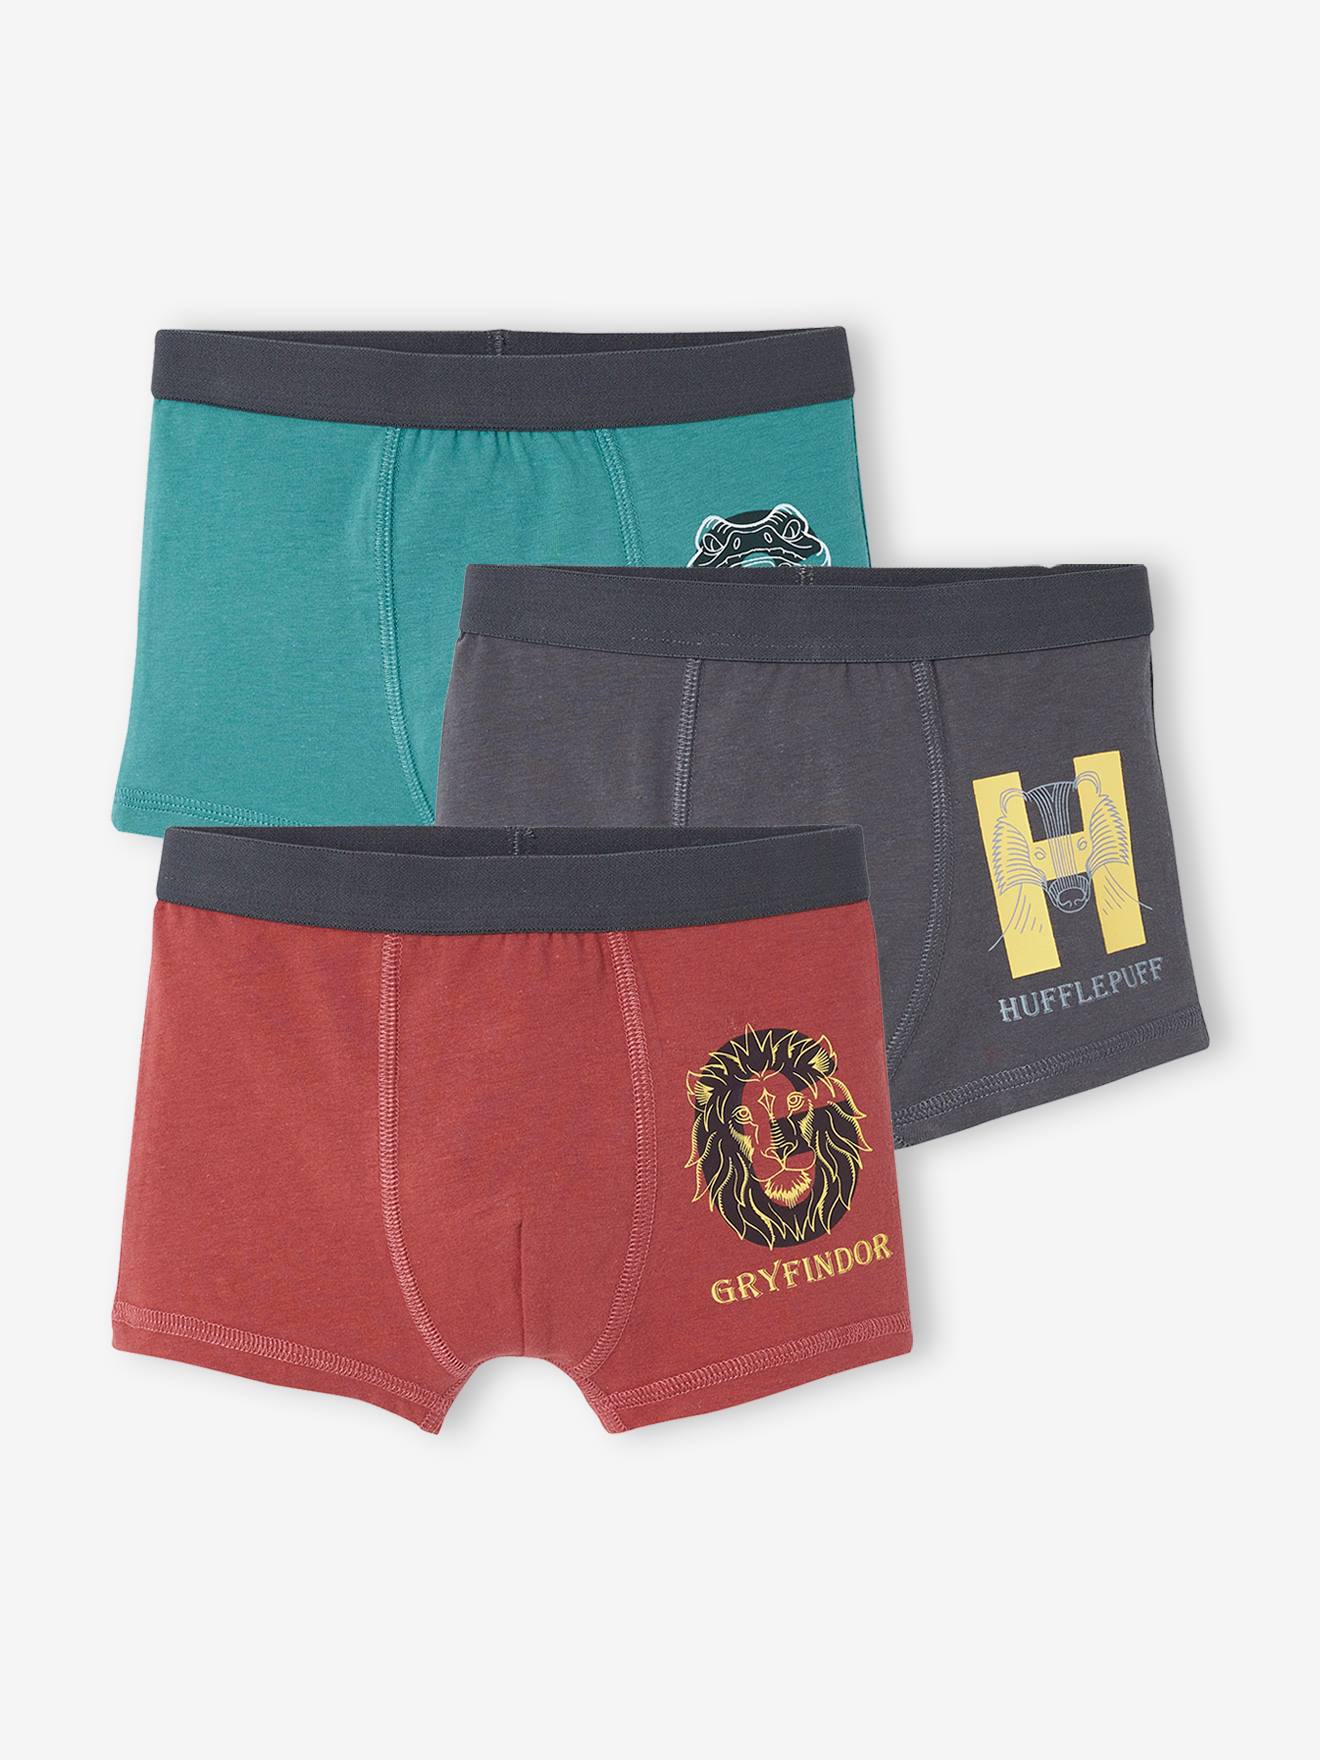 Set van 3 Harry Potter® boxers rood, groen, grijs